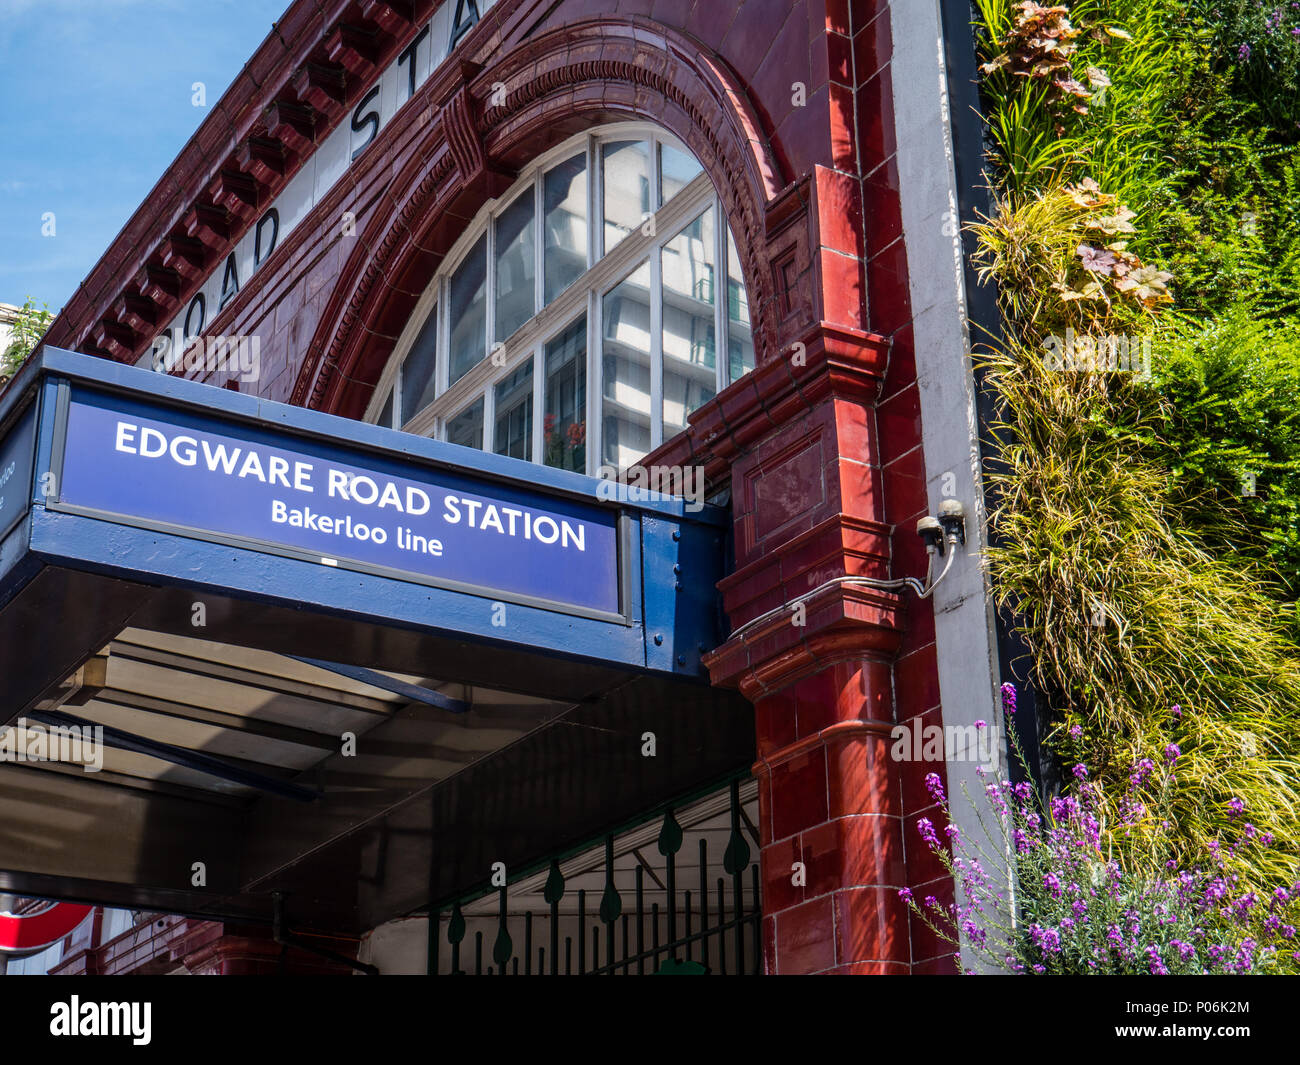 La station de métro Edgware Road London, avec mur vert pour réduire la pollution de l'air, Londres, Angleterre, RU, FR. Banque D'Images